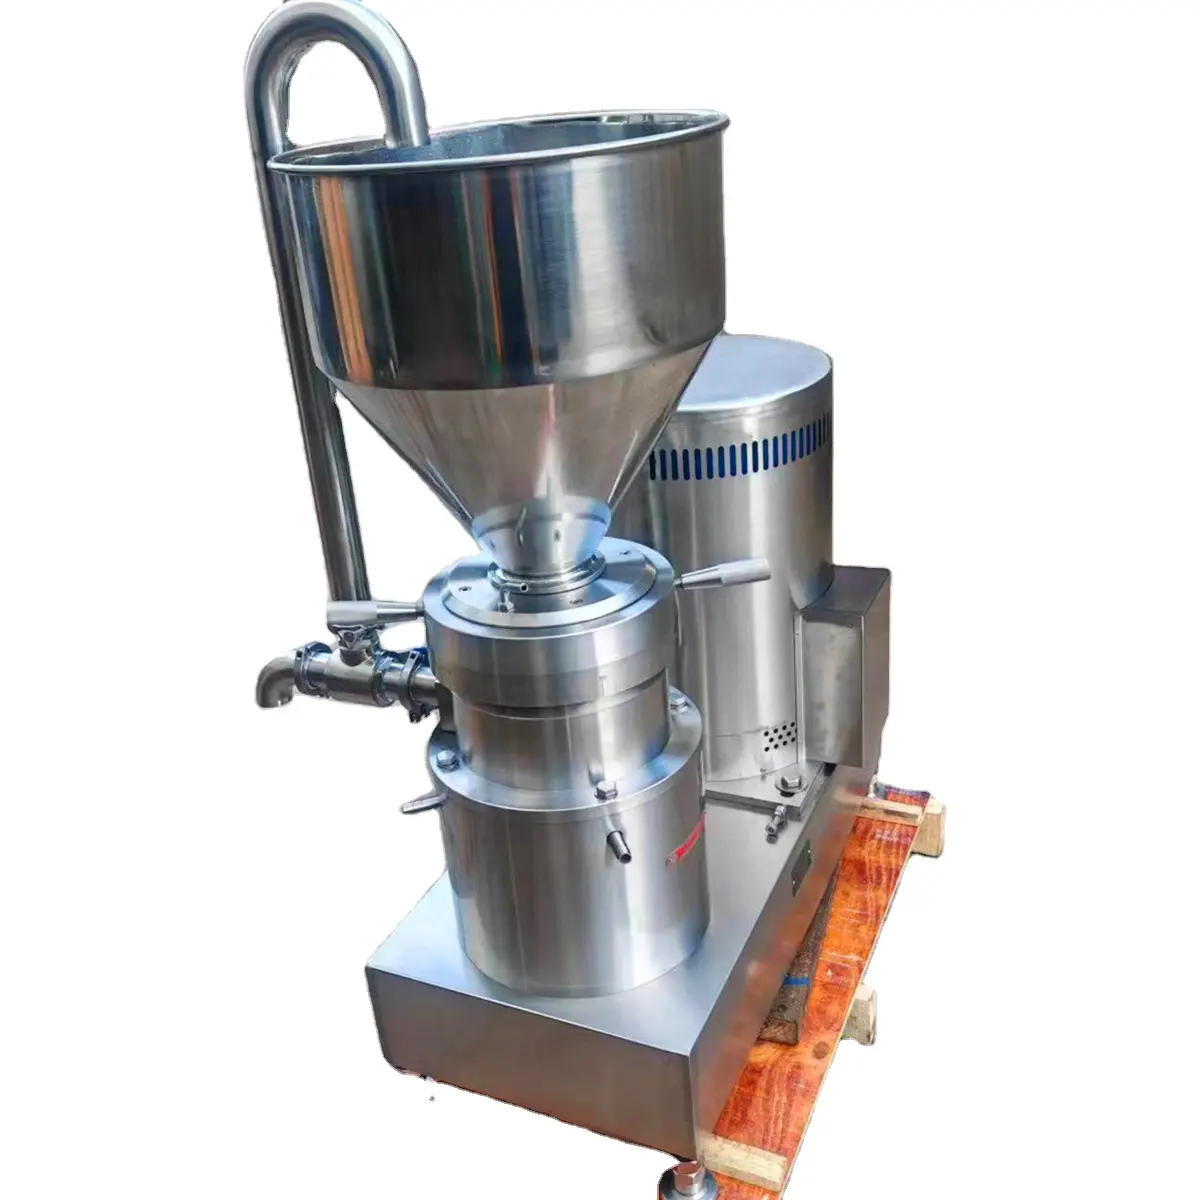 Su misura di produzione di cacao di arachidi di sesamo acciaio inossidabile mulino colloide JMF-80 della macchina per macinare